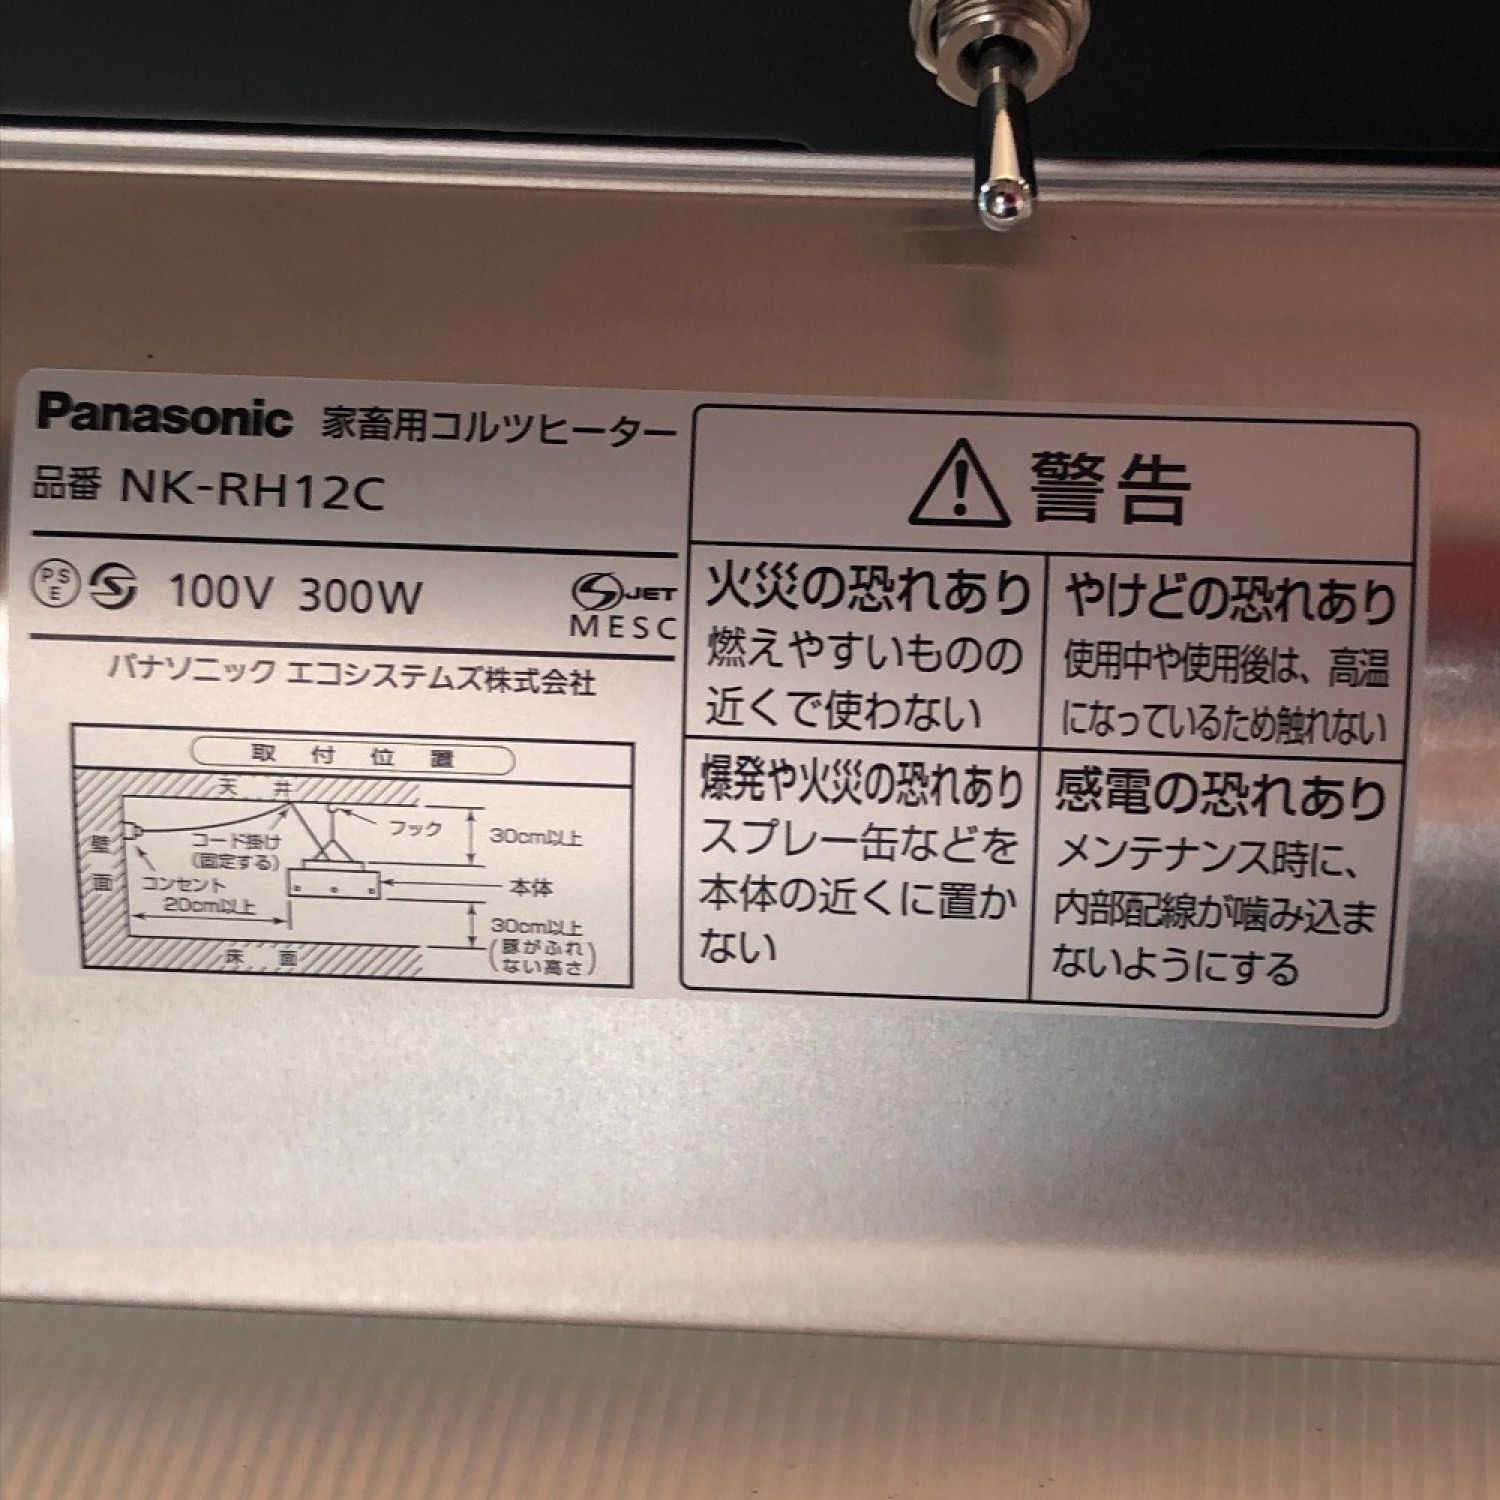 中古】 Panasonic パナソニック コルツヒーター NK-RH12C Sランク